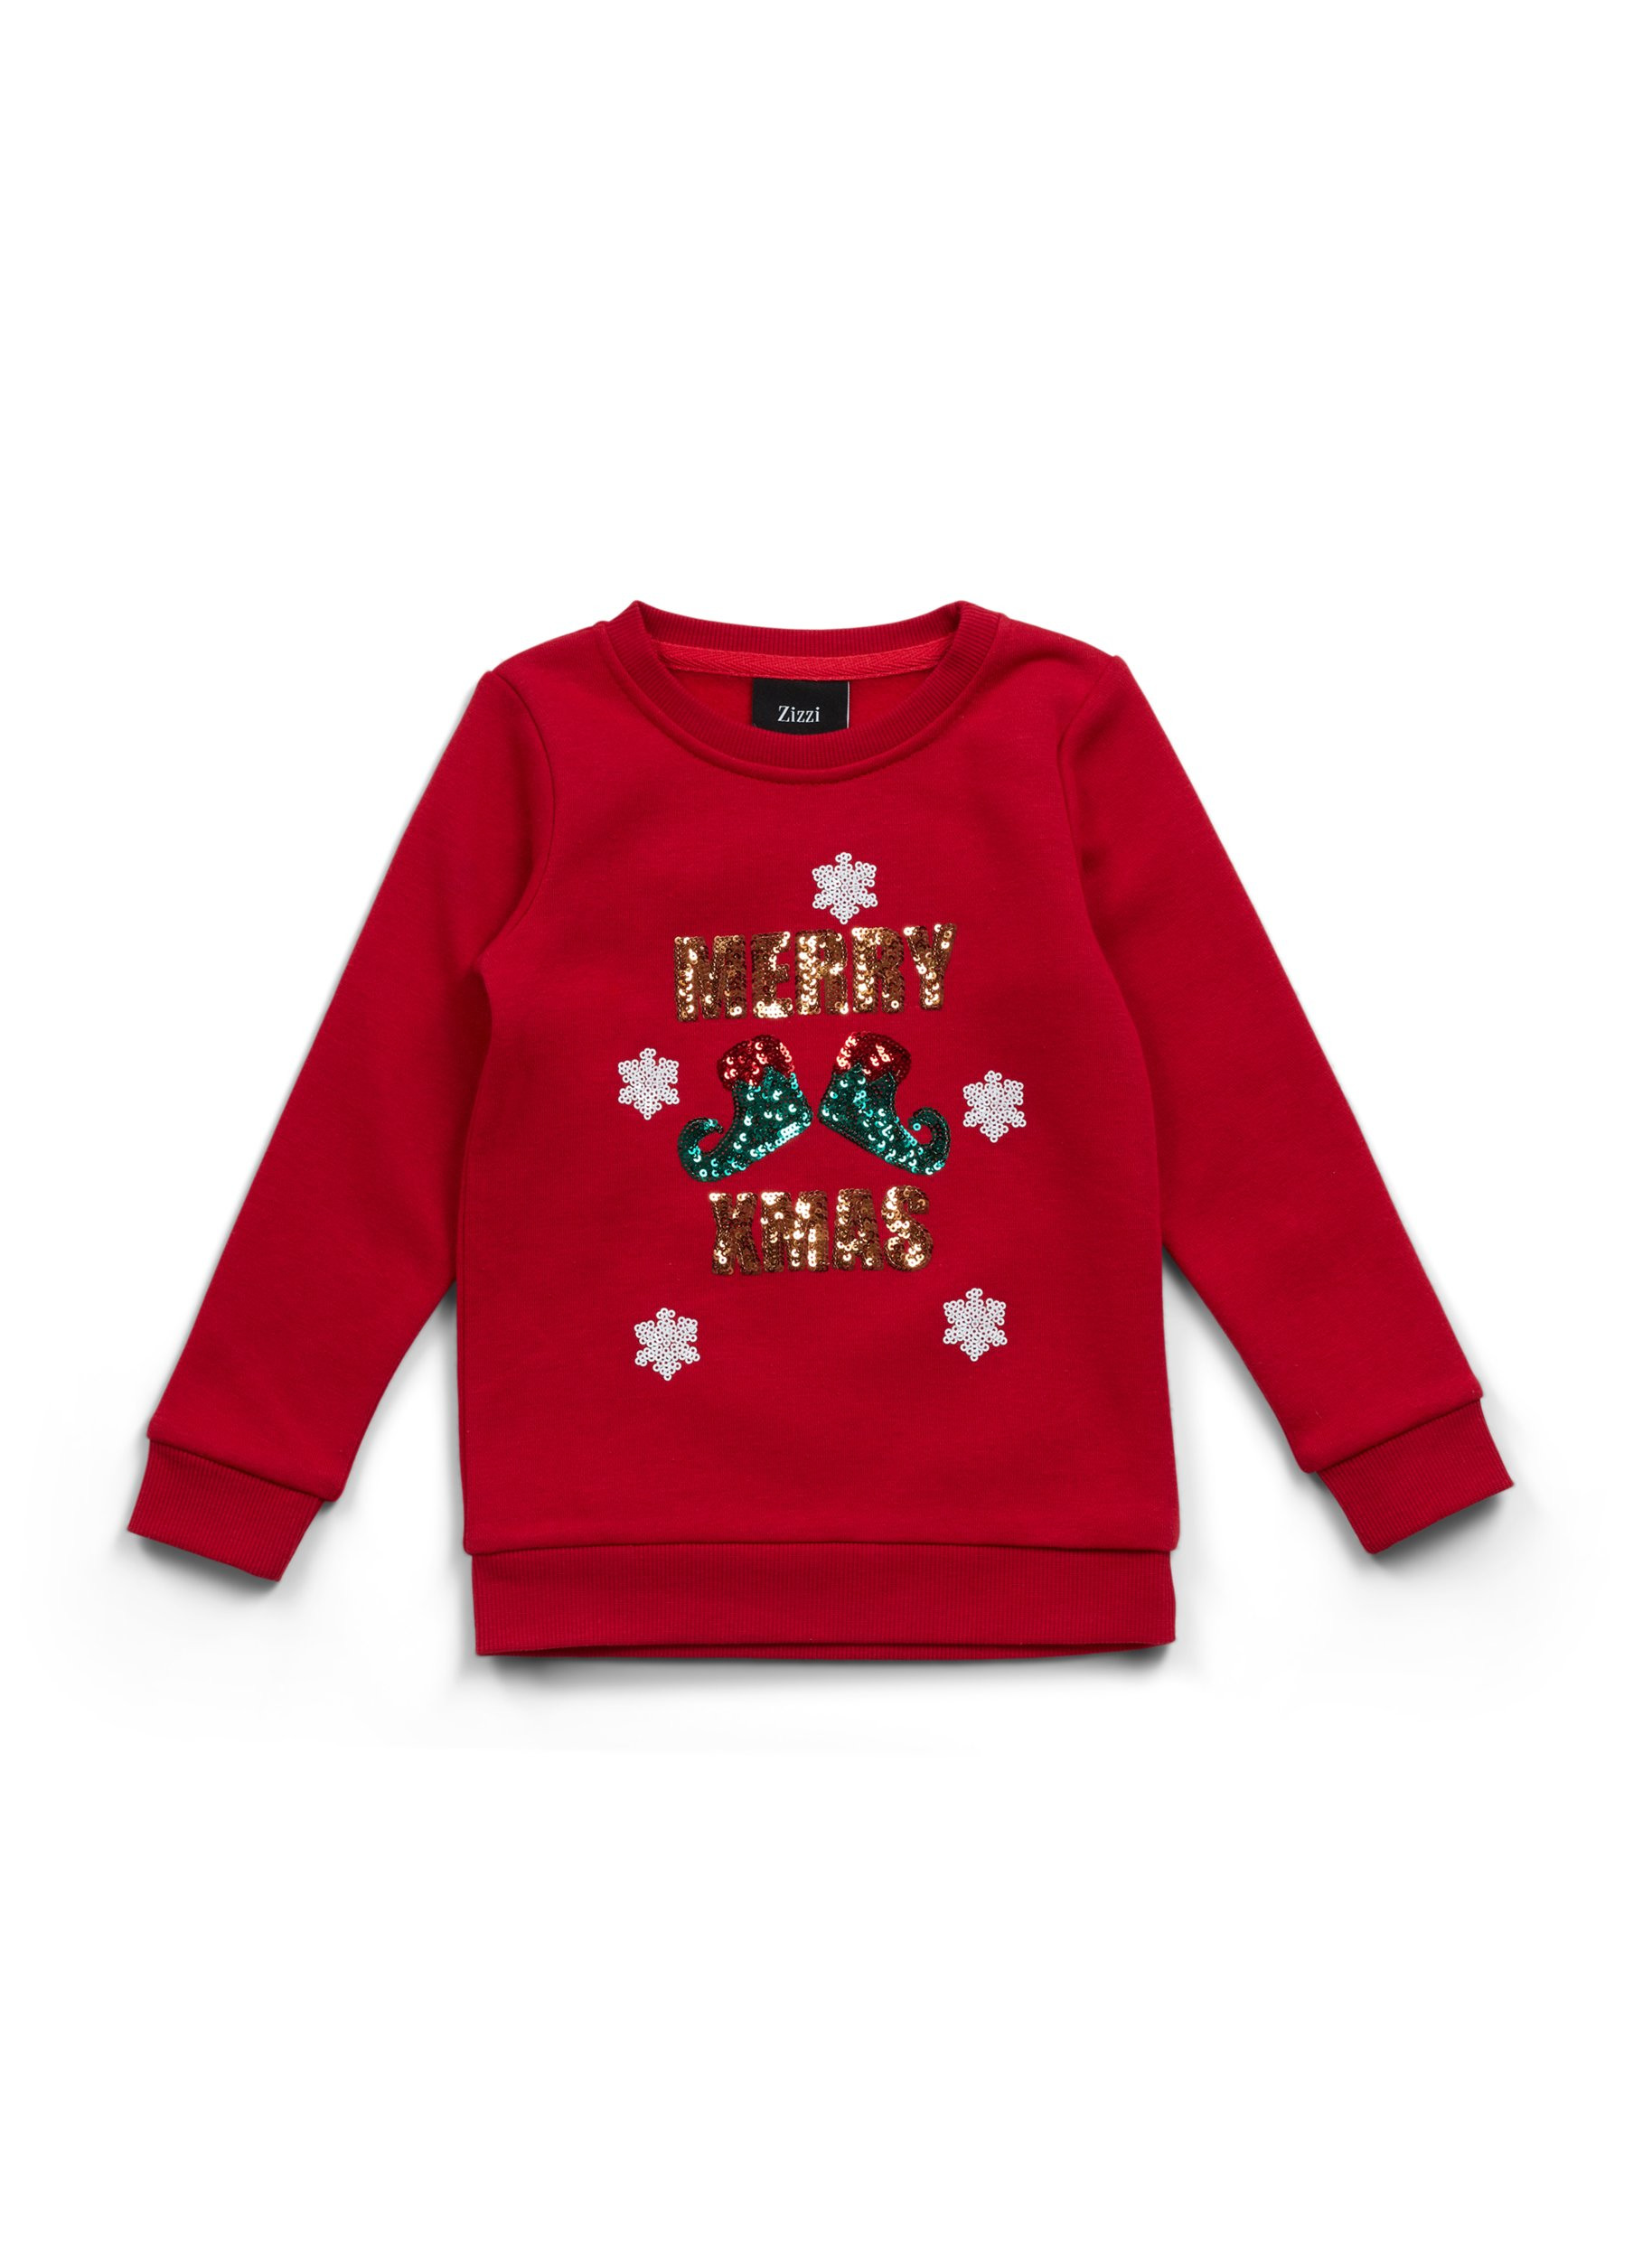 Jule sweatshirt til børn, Tango Red Merry XMAS, Packshot